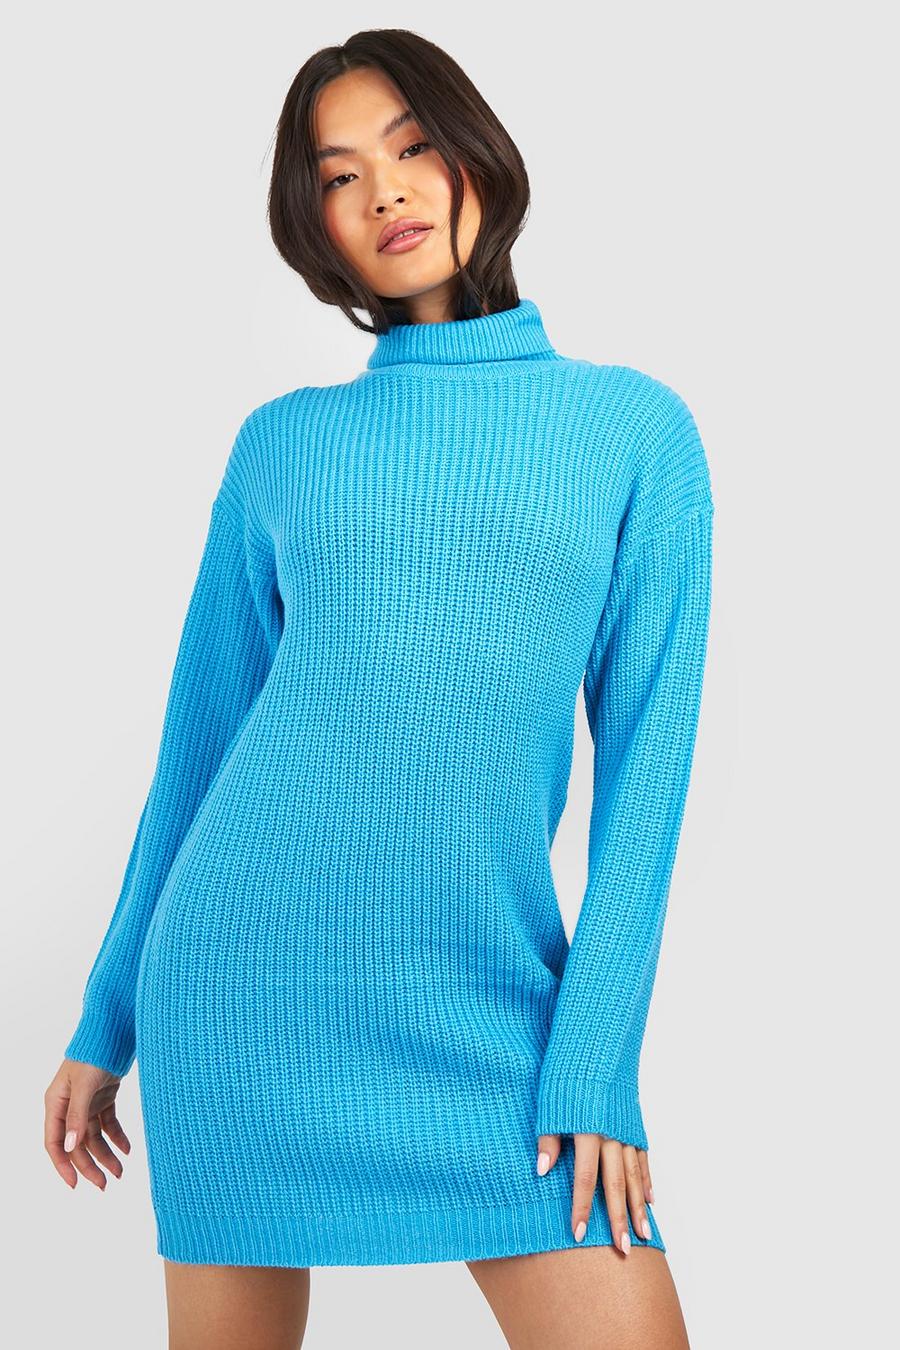 Turquoise blue Turtleneck Oversized Sweater